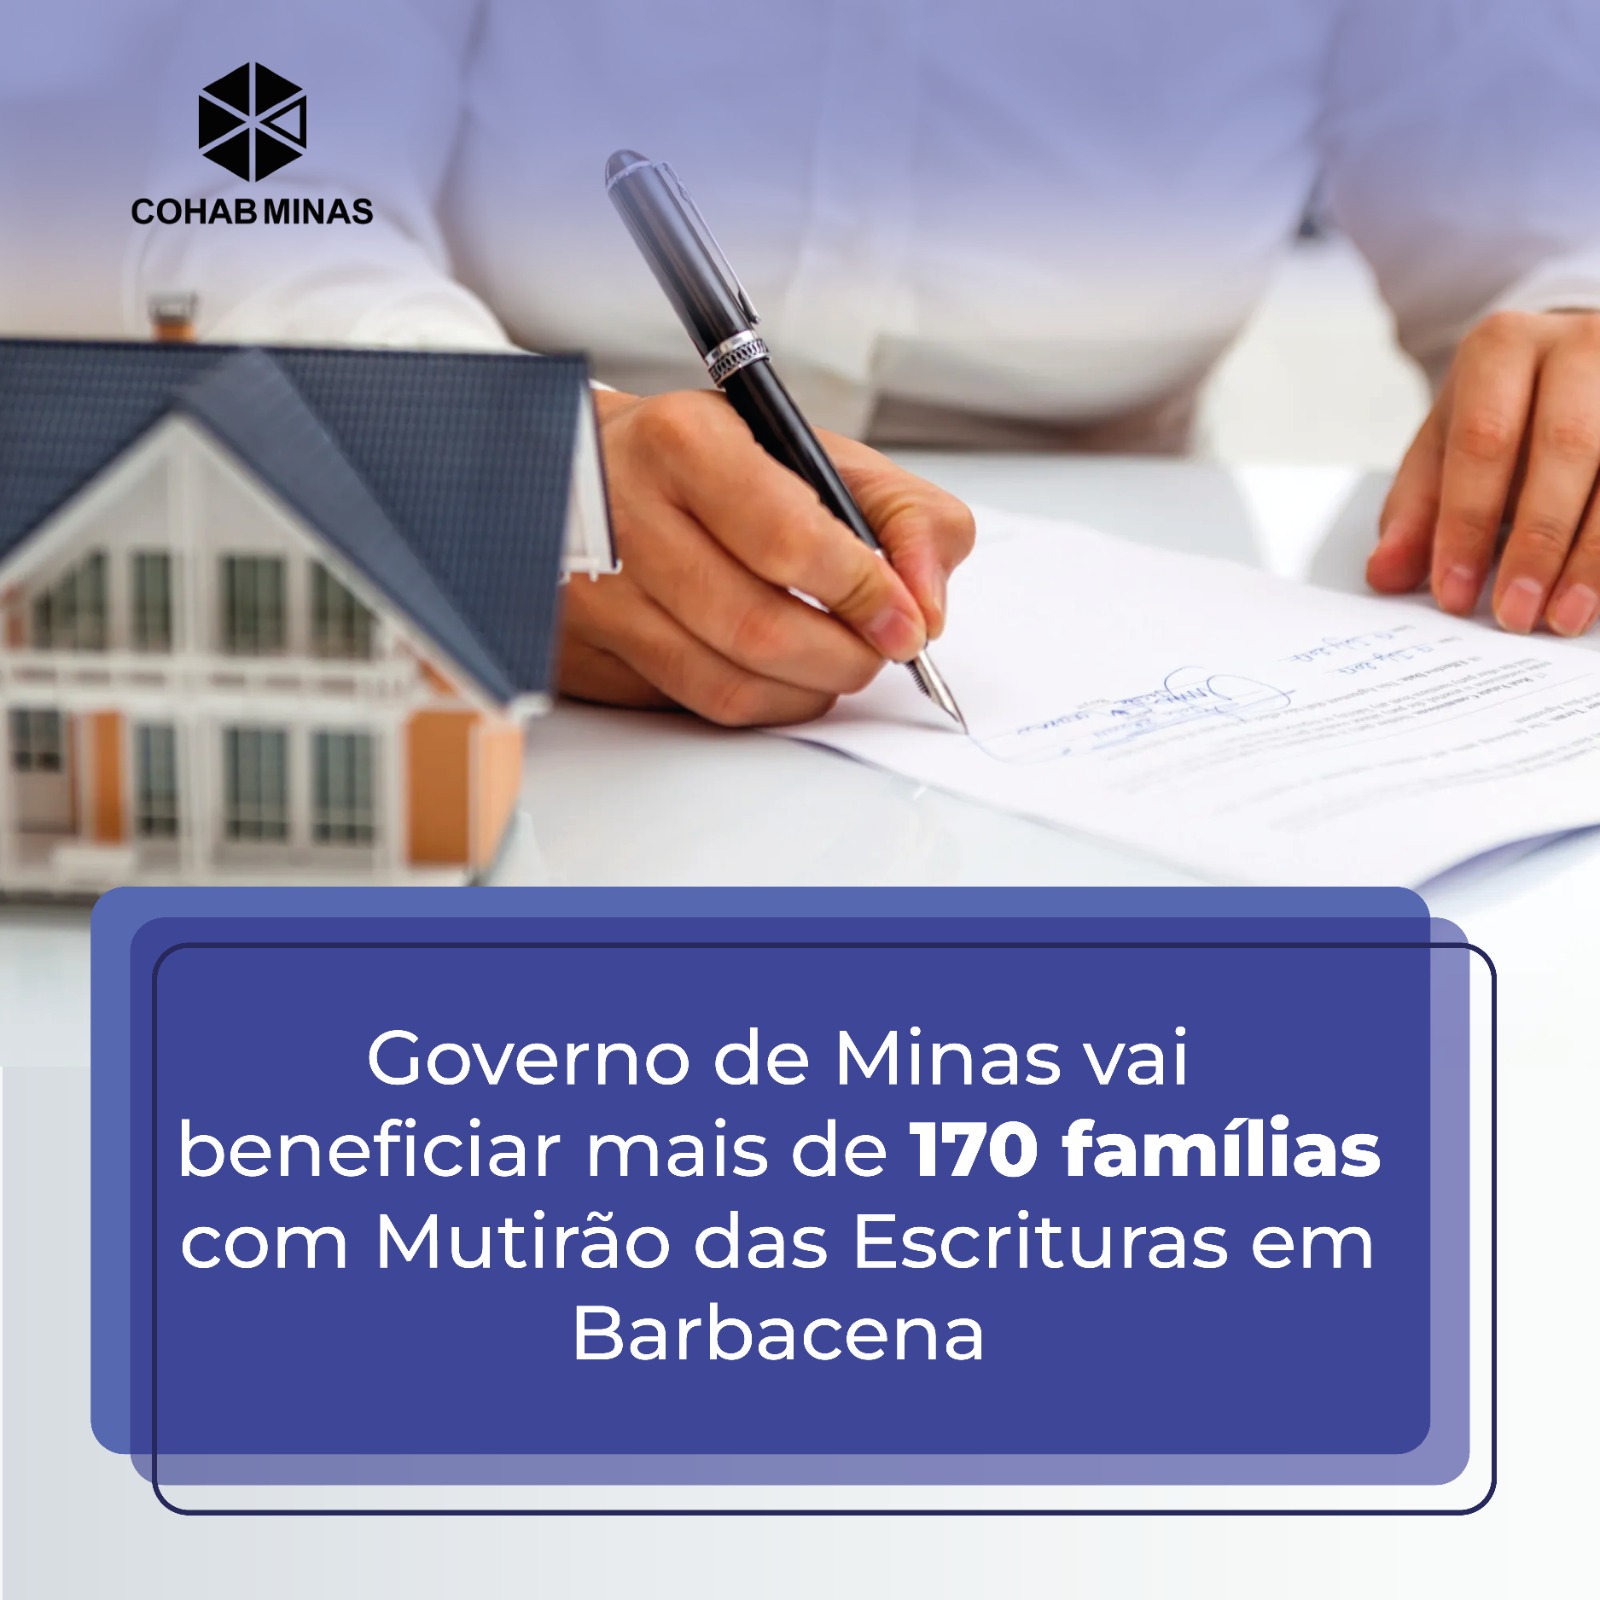 Governo de Minas vai beneficiar mais de 170 famílias com Mutirão das Escrituras em Barbacena